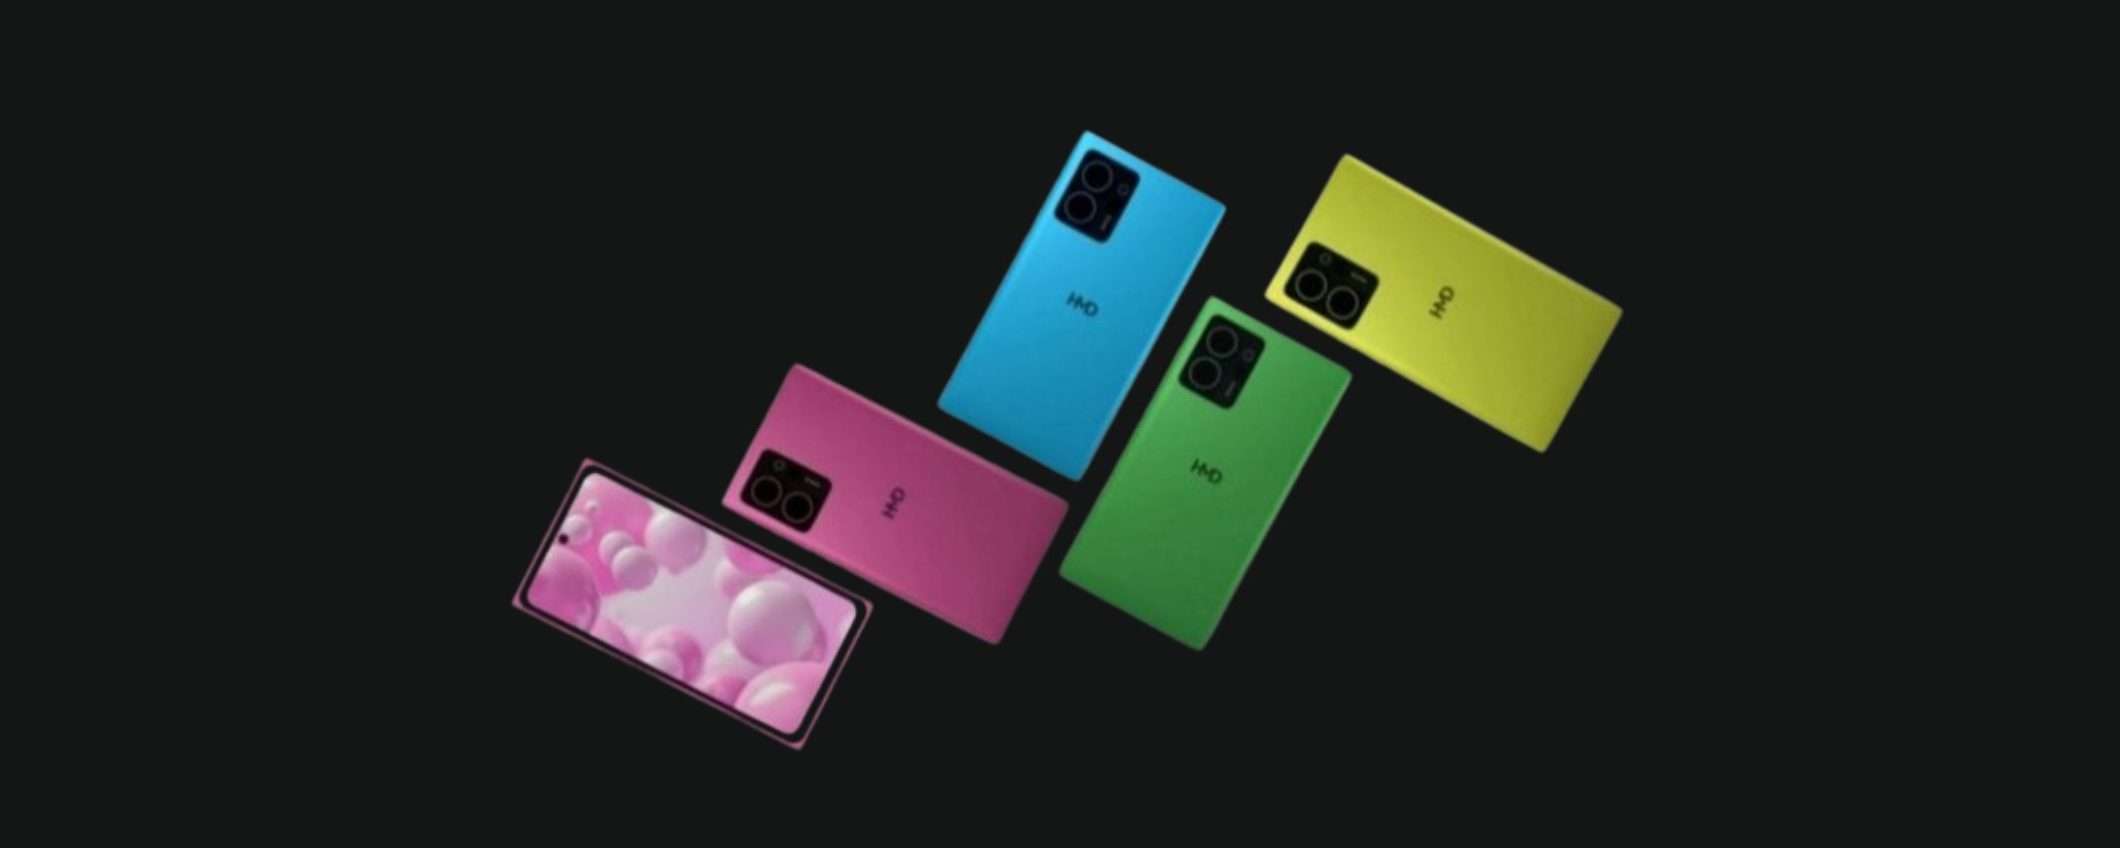 Il prossimo telefono di HMD sarà un omaggio a Nokia Lumia